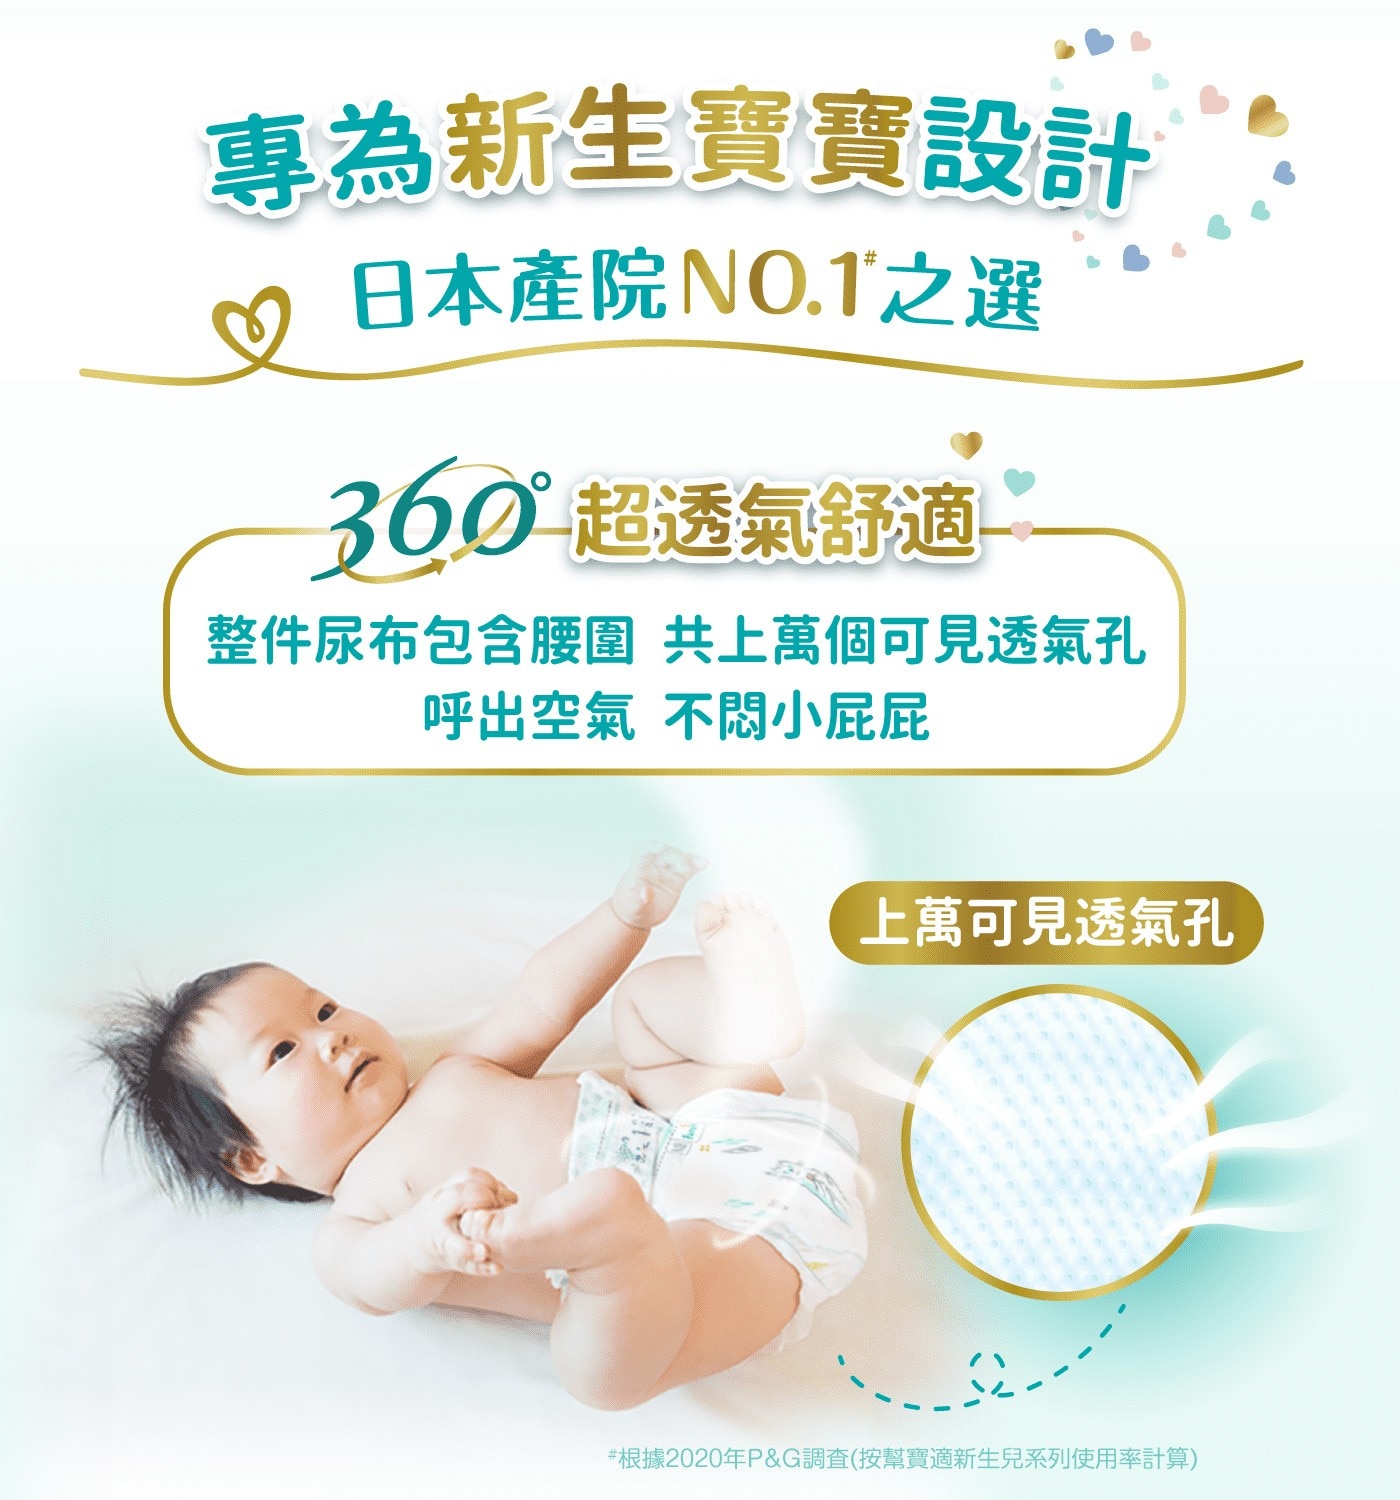 幫寶適一級幫XL號專為新生寶寶設計日本產院第一首選整件尿布包含腰圍共上萬個可見透氣孔呼出空氣不悶小屁屁